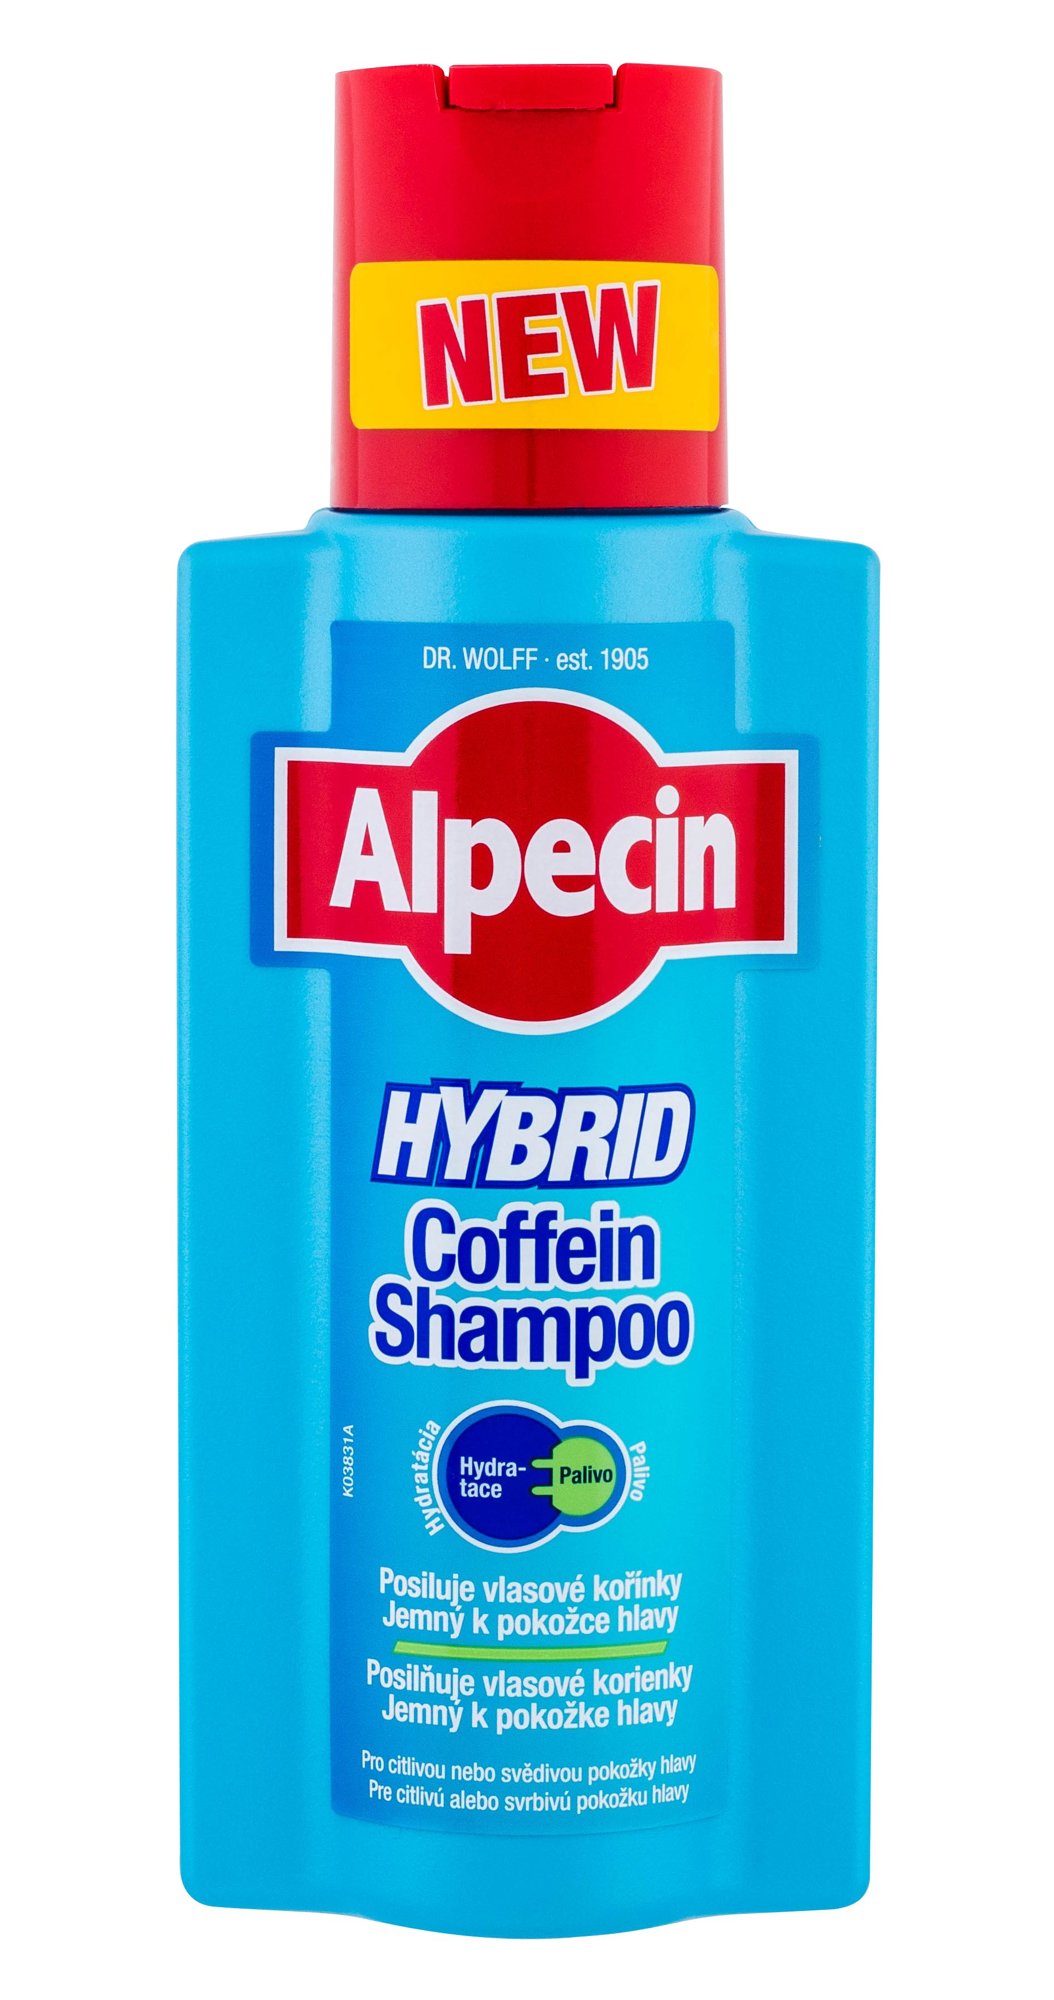 Alpecin Hybrid Coffein Shampoo šampūnas